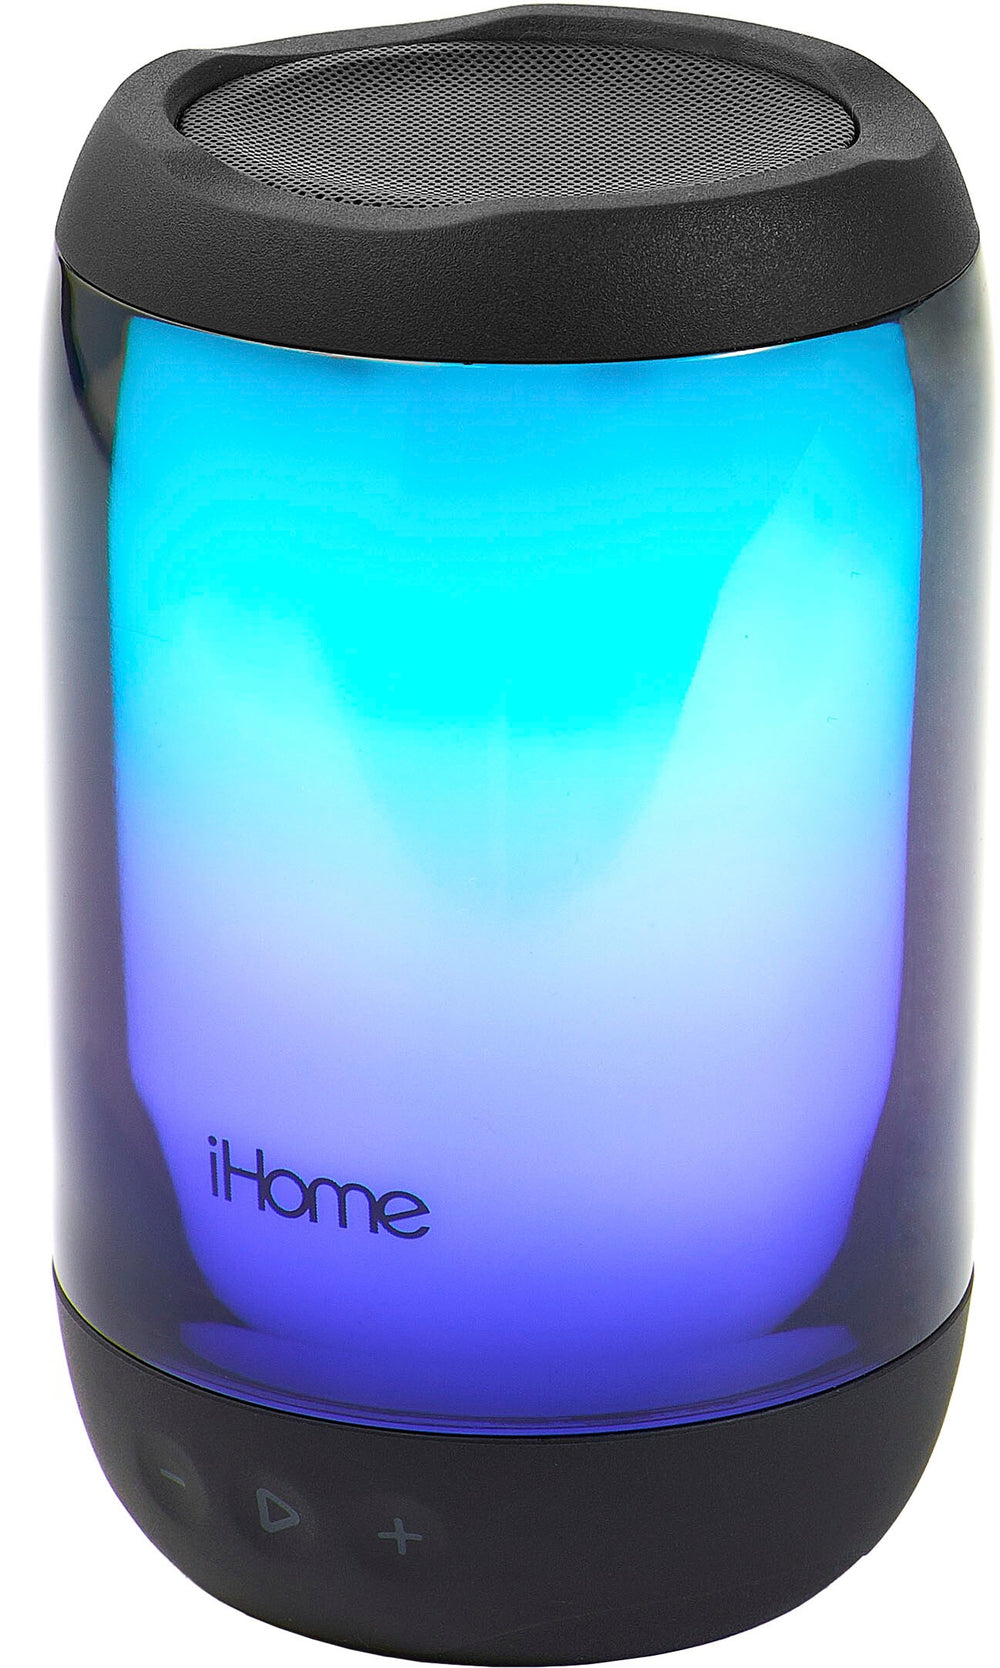 iHome - Rechargeable Waterproof Bluetooth Speaker - Black_1